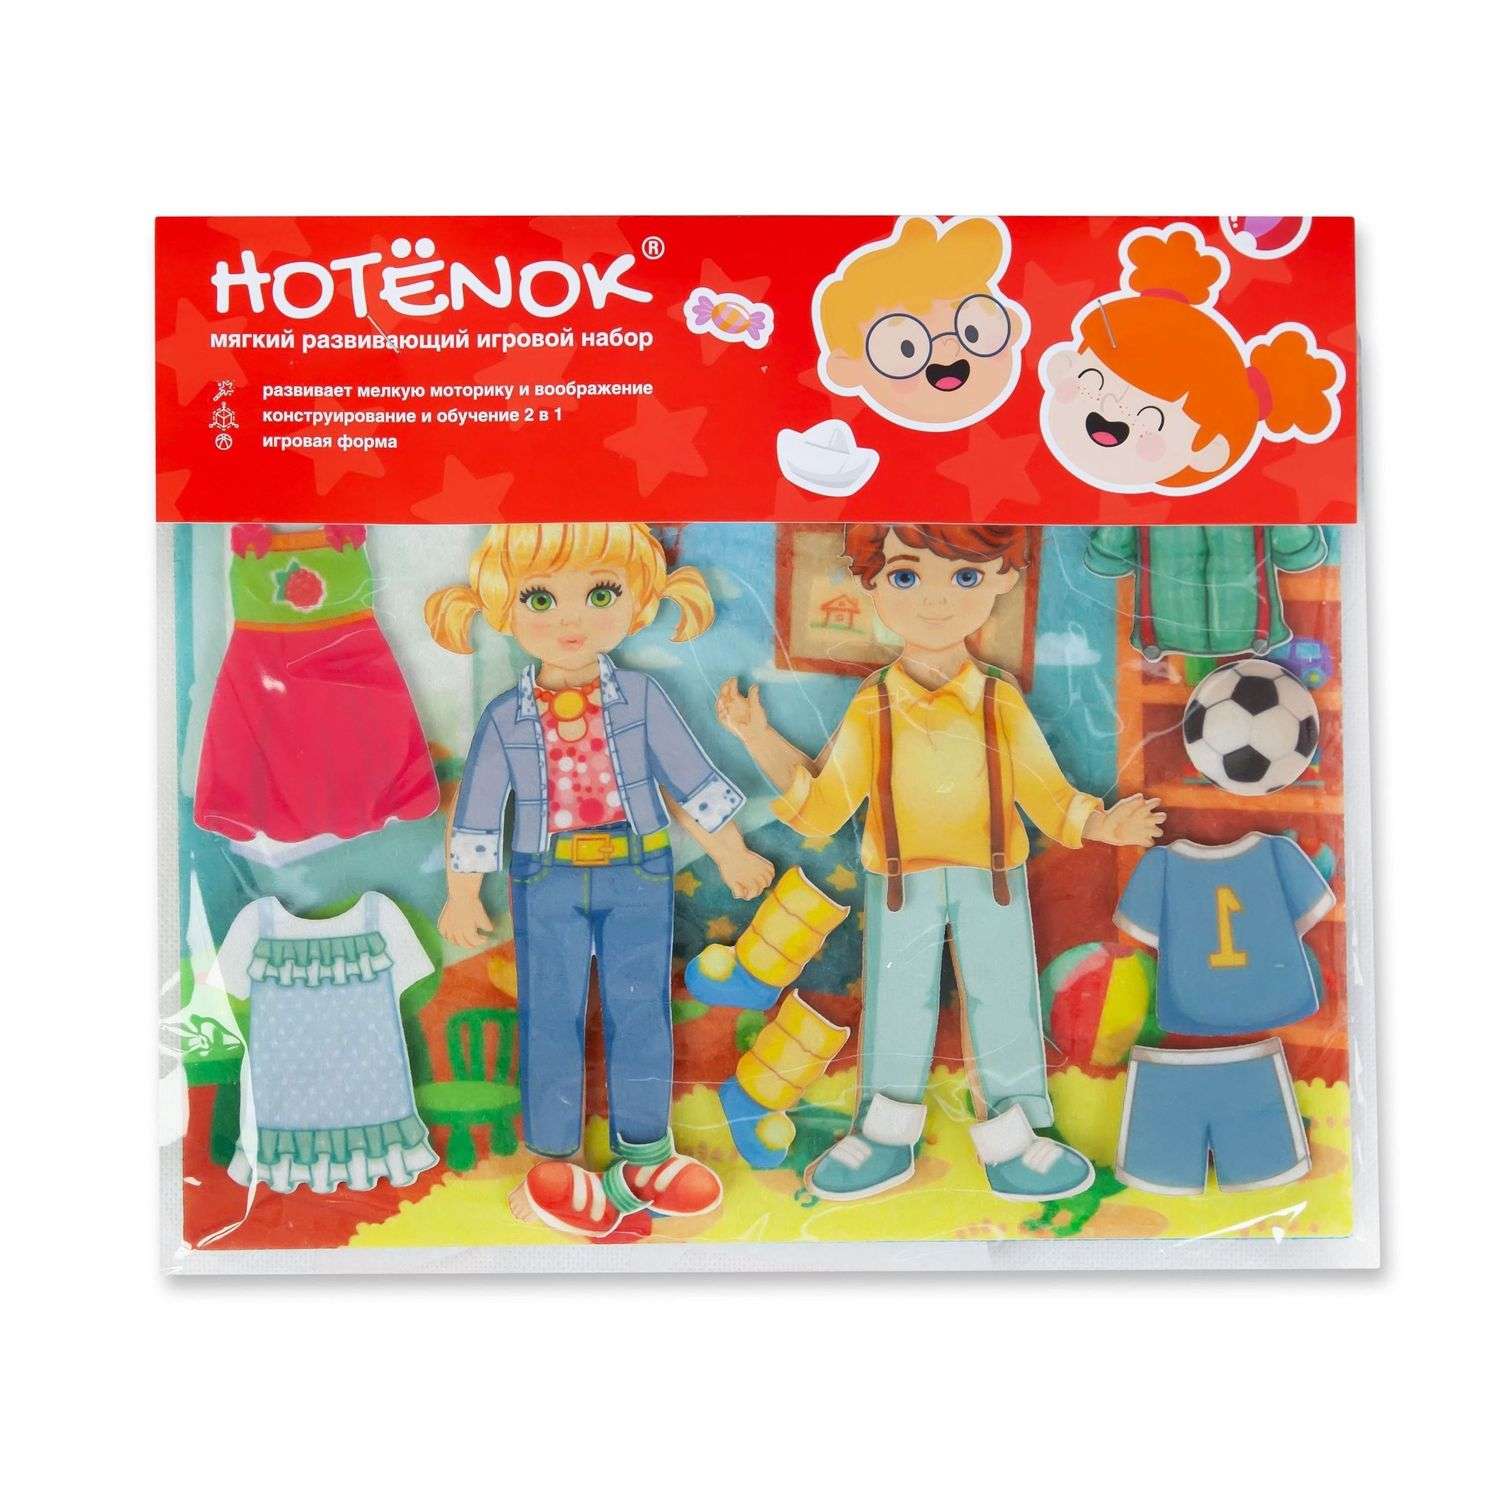 Игра Hotenok сюжетная развивающая мягкая Модник и модница для детей seh006 - фото 1